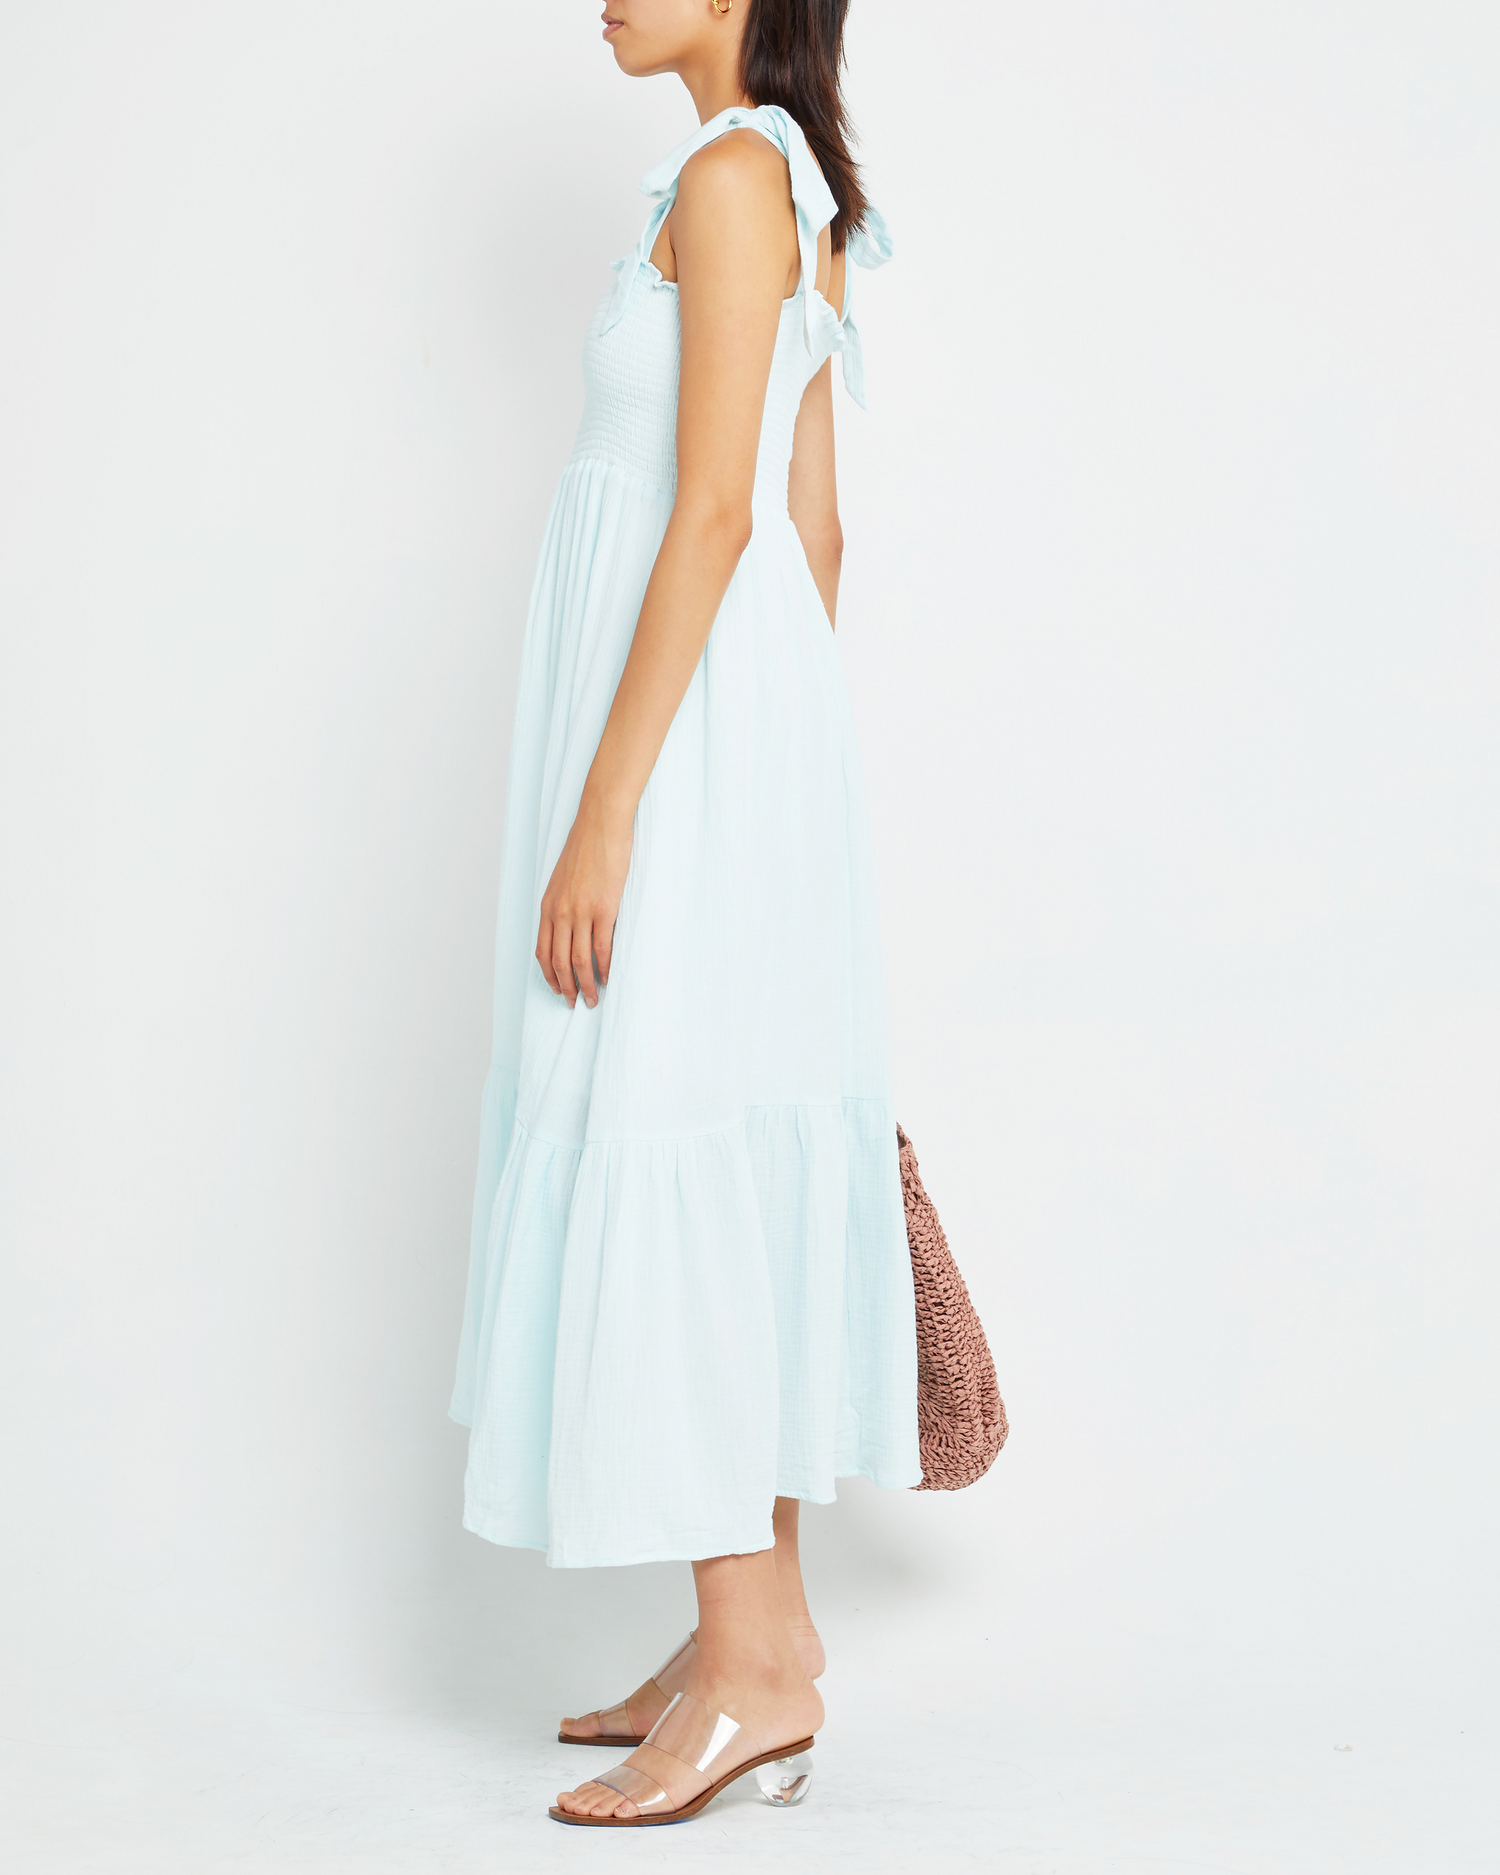 Fourth image of Cotton Winnie Dress, a blue midi dress, tie straps, smocked bodice